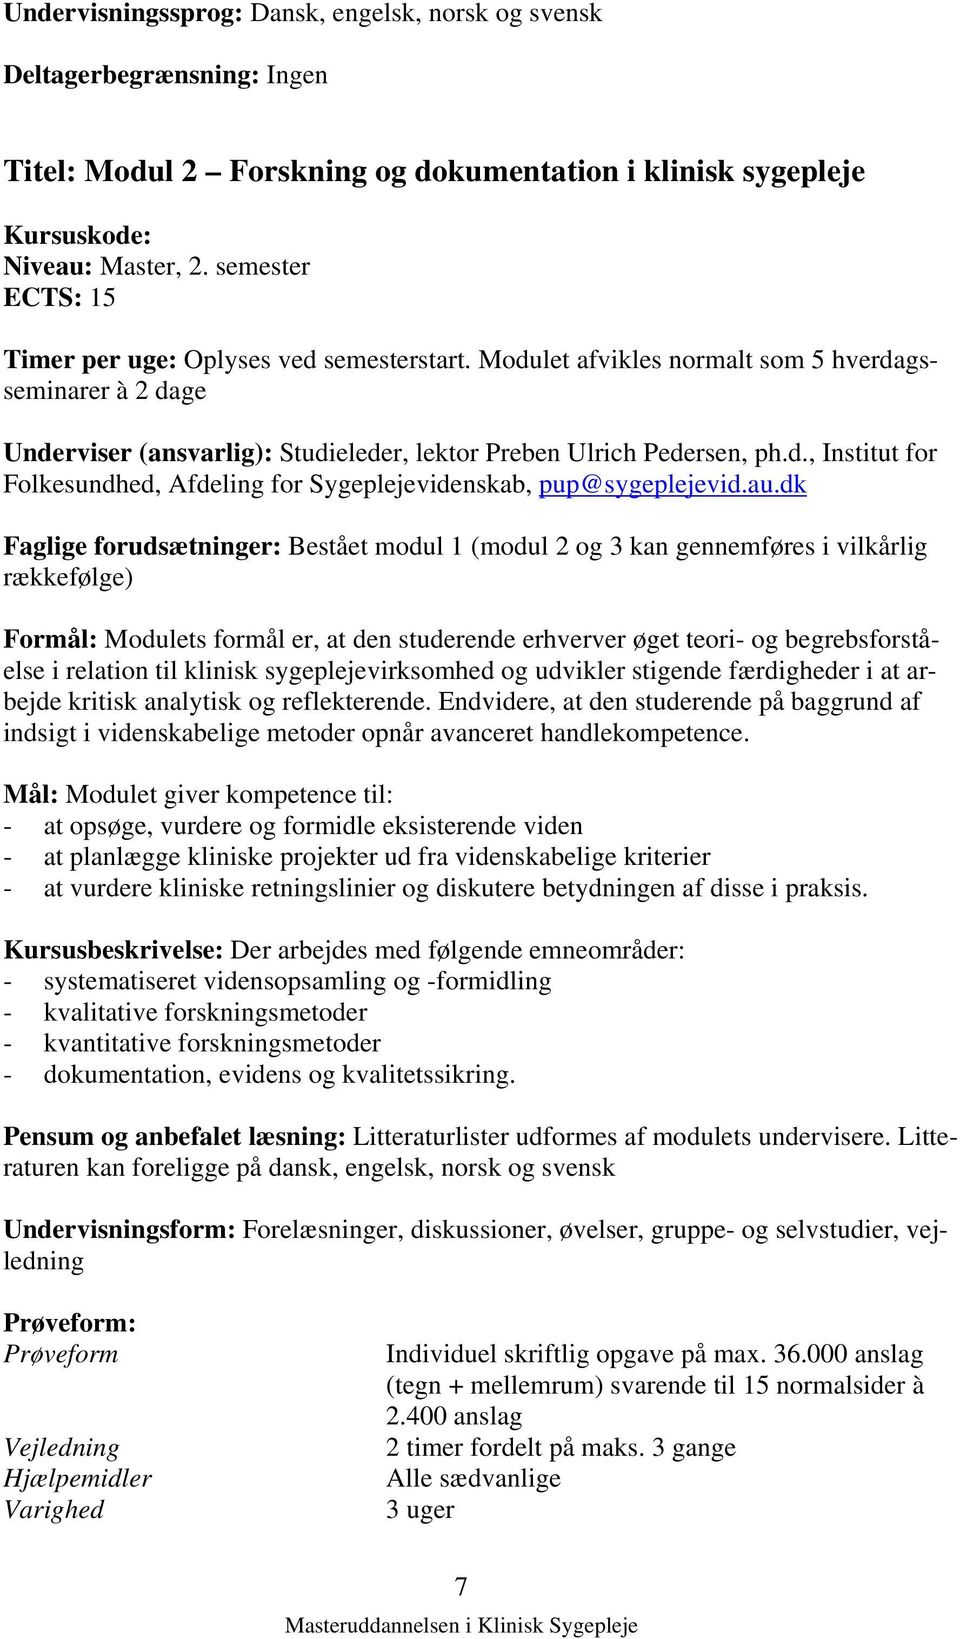 Studieordning. for. Masteruddannelsen i Klinisk Sygepleje - PDF Free  Download